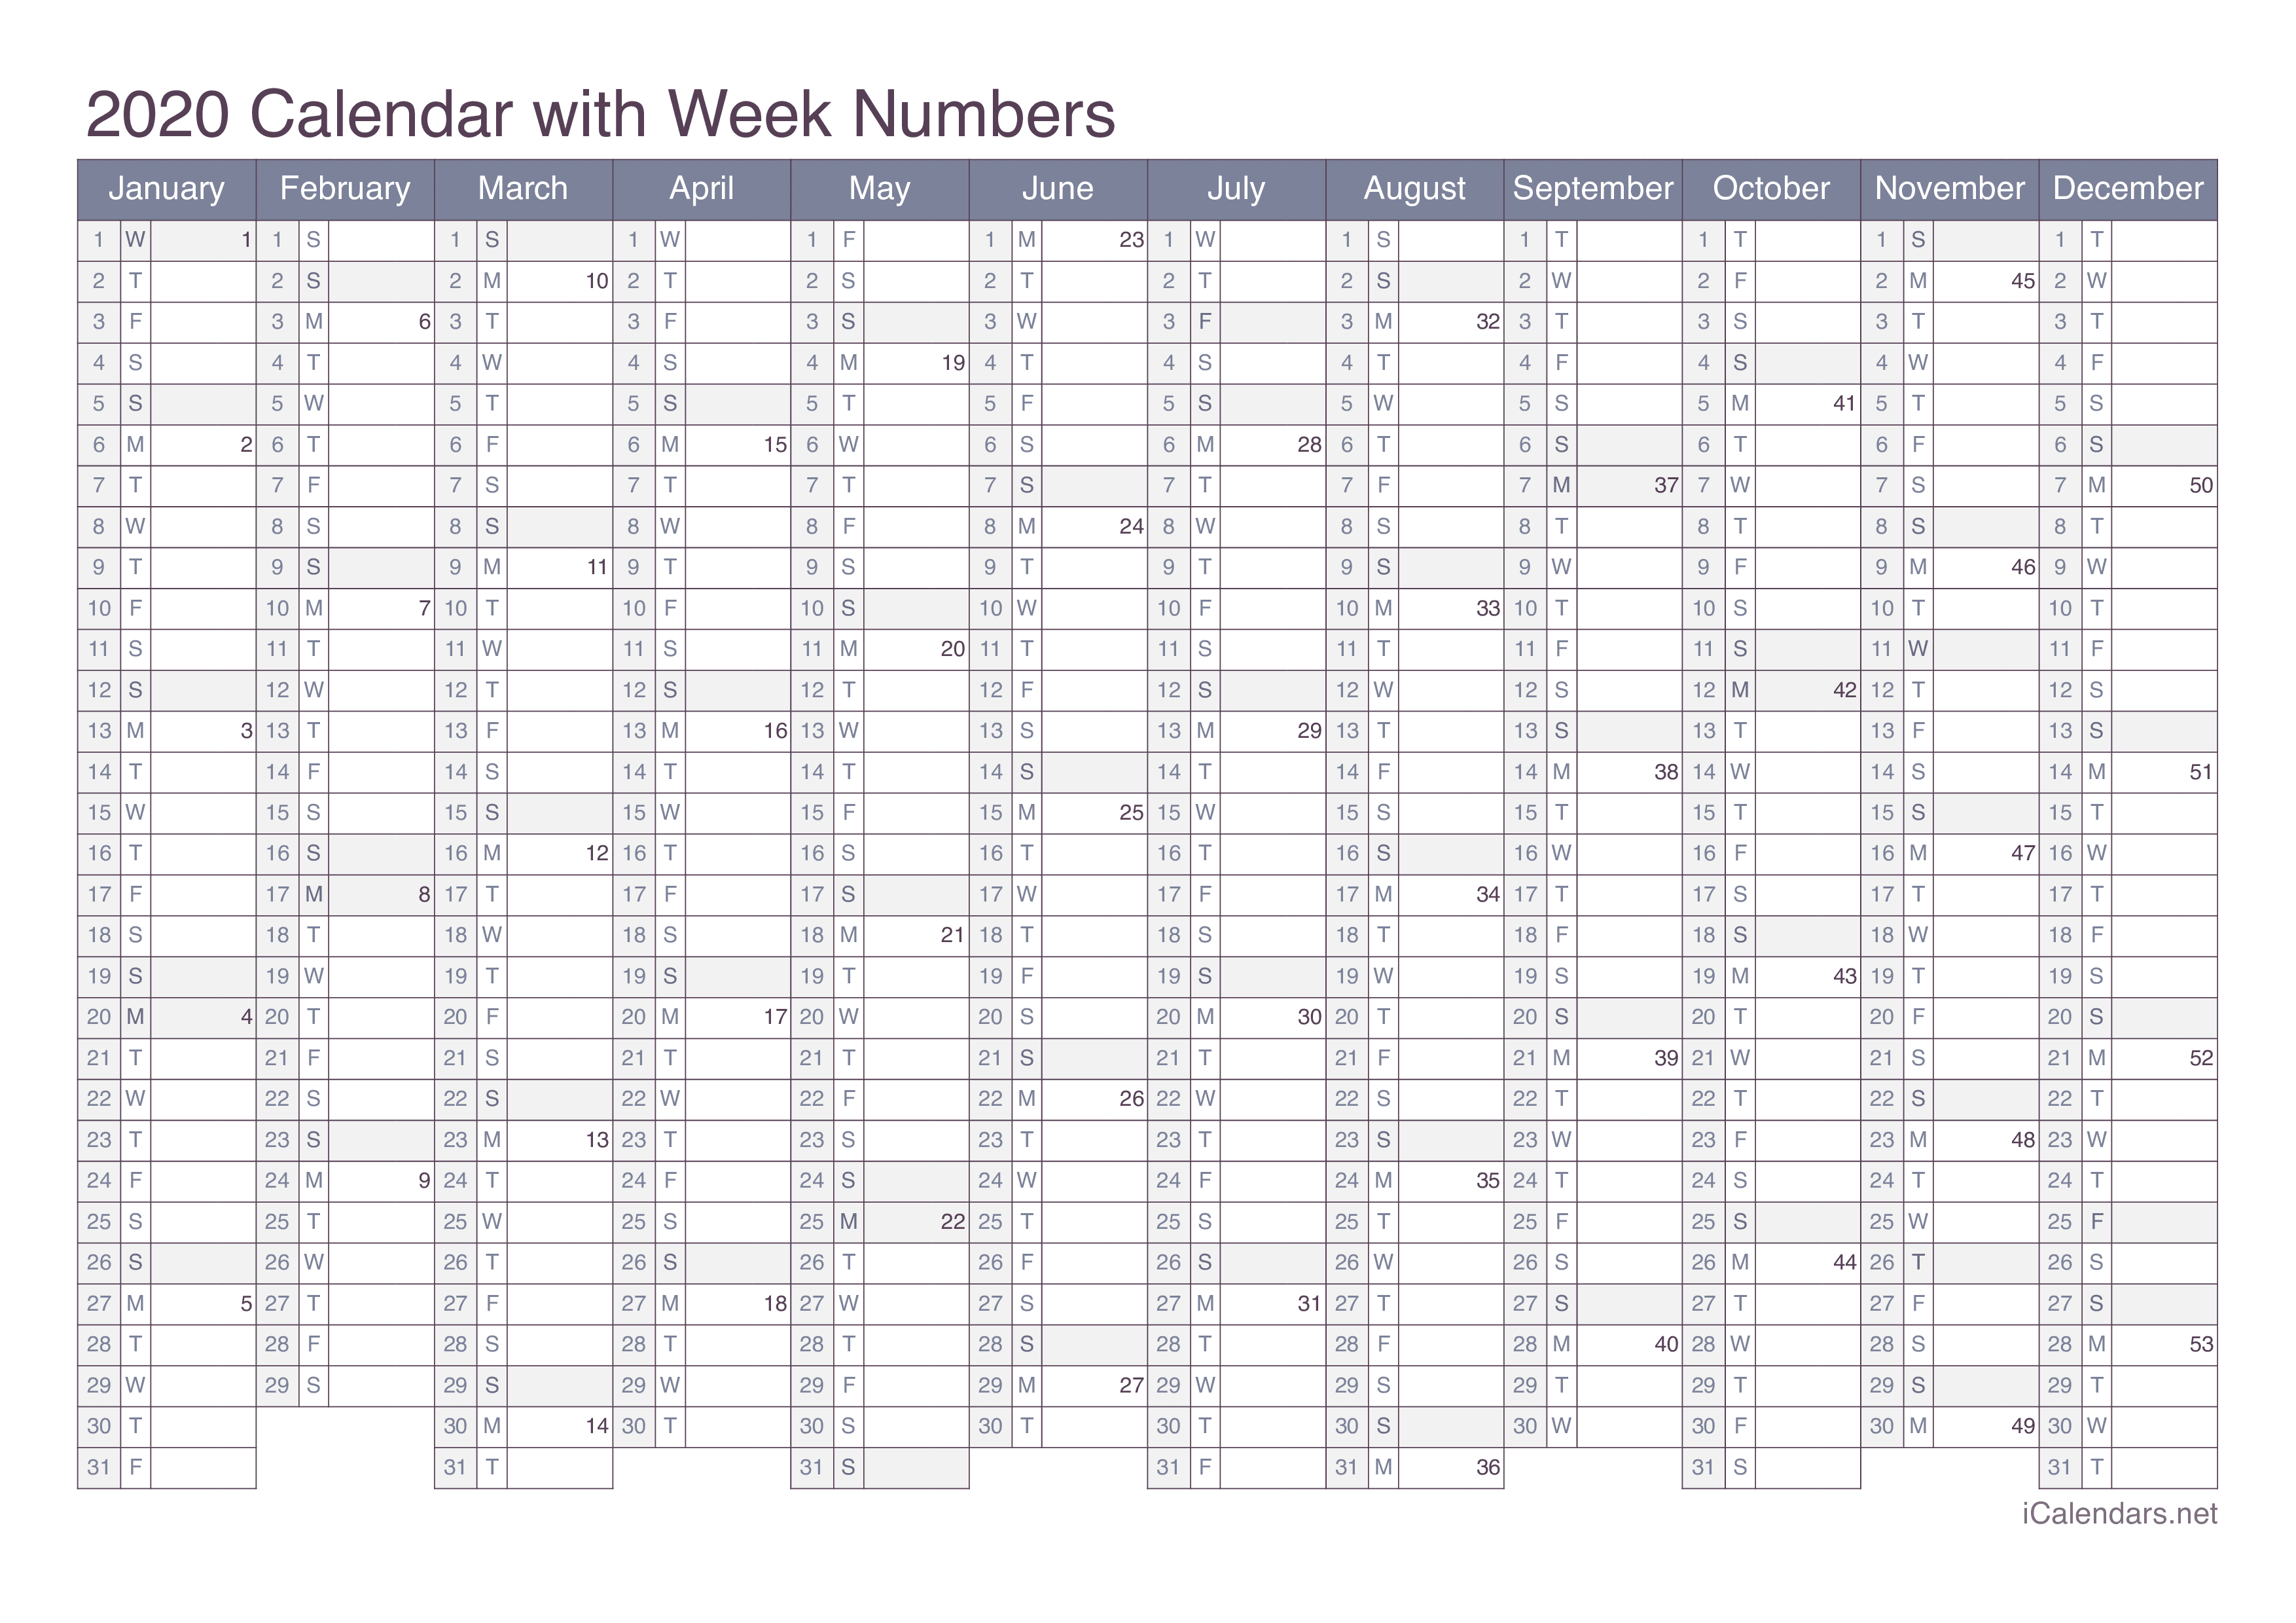 2020 Calendar with week numbers - Office